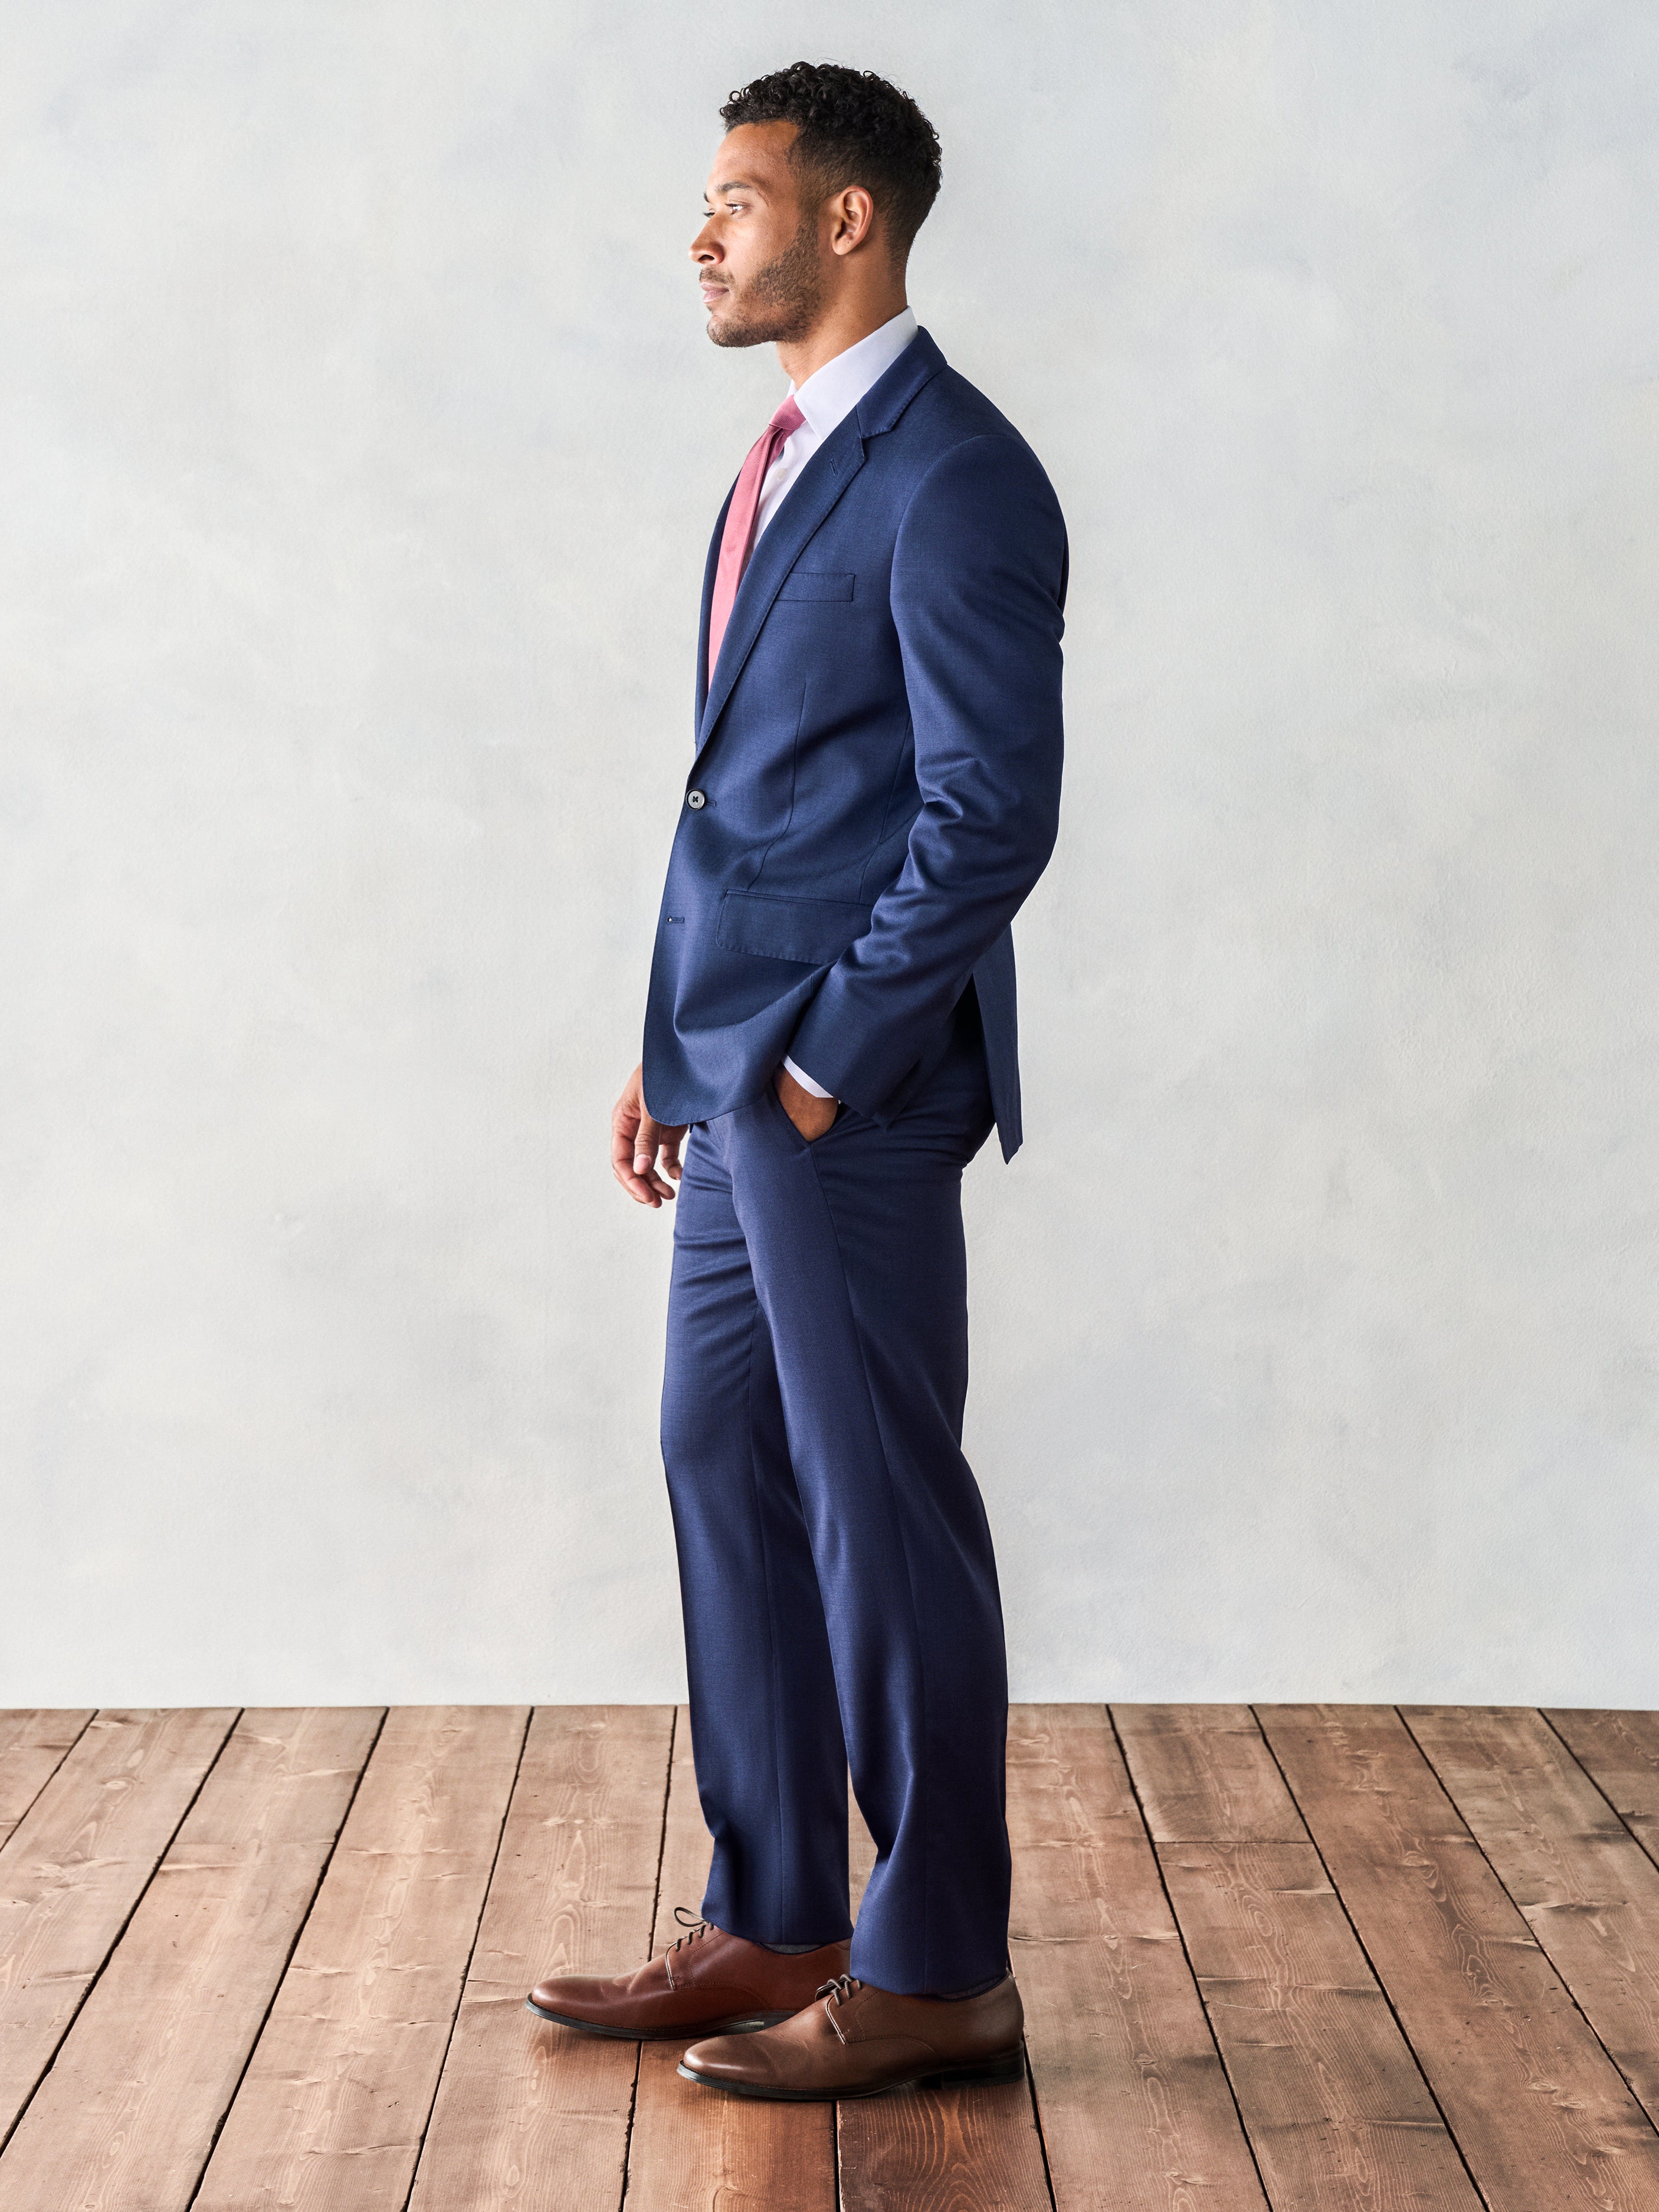 blue suit for men ⋆ Best Fashion Blog For Men - TheUnstitchd.com